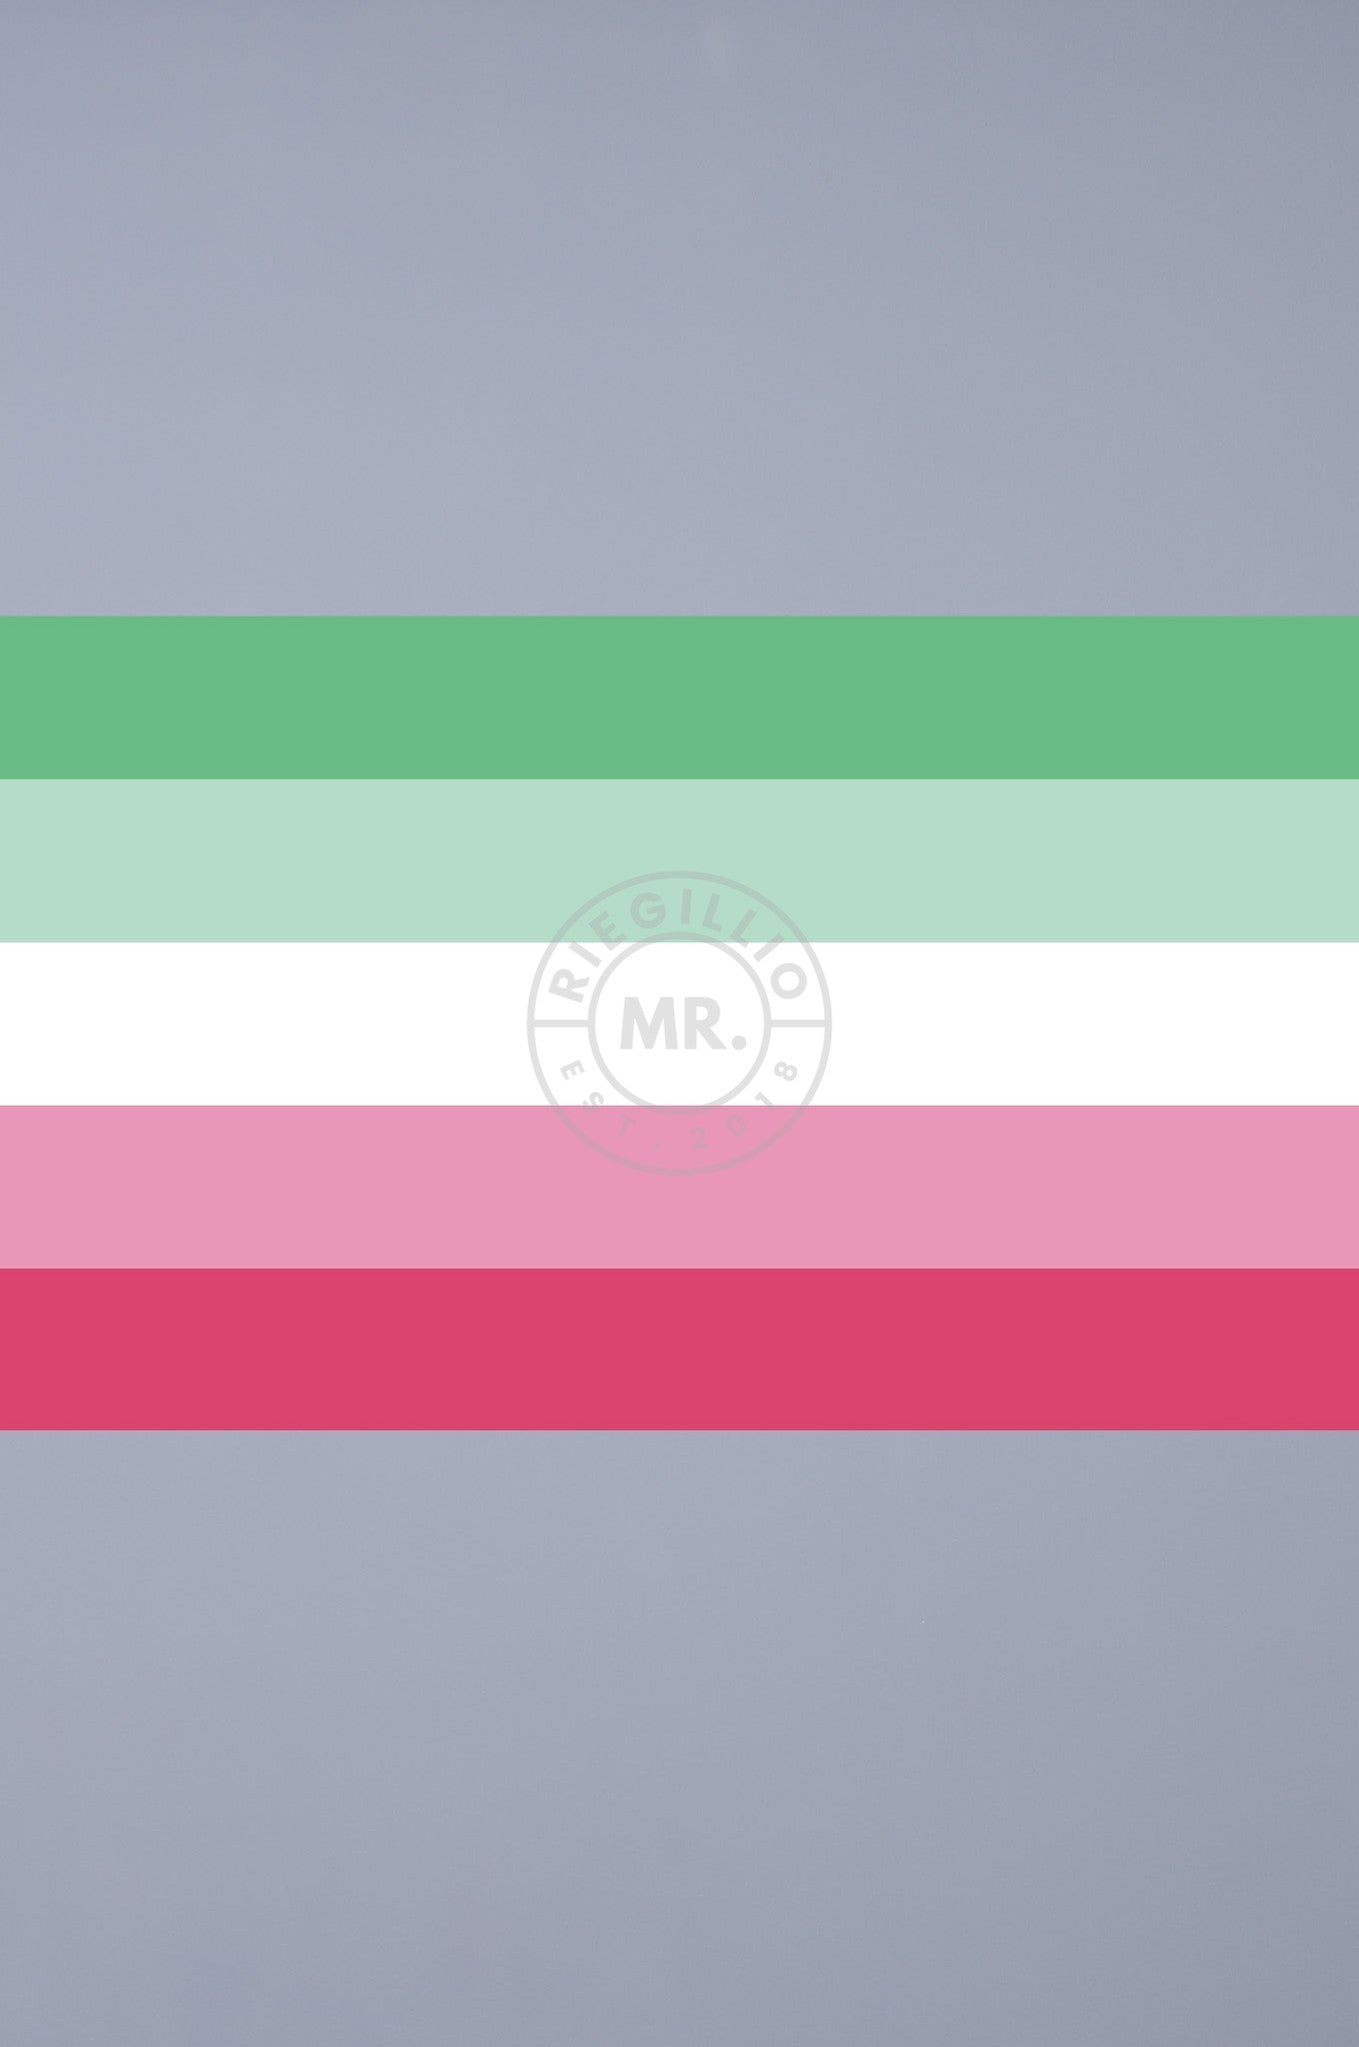 Pride Flag - Abrosexual - 90 x 150 cm at MR. Riegillio